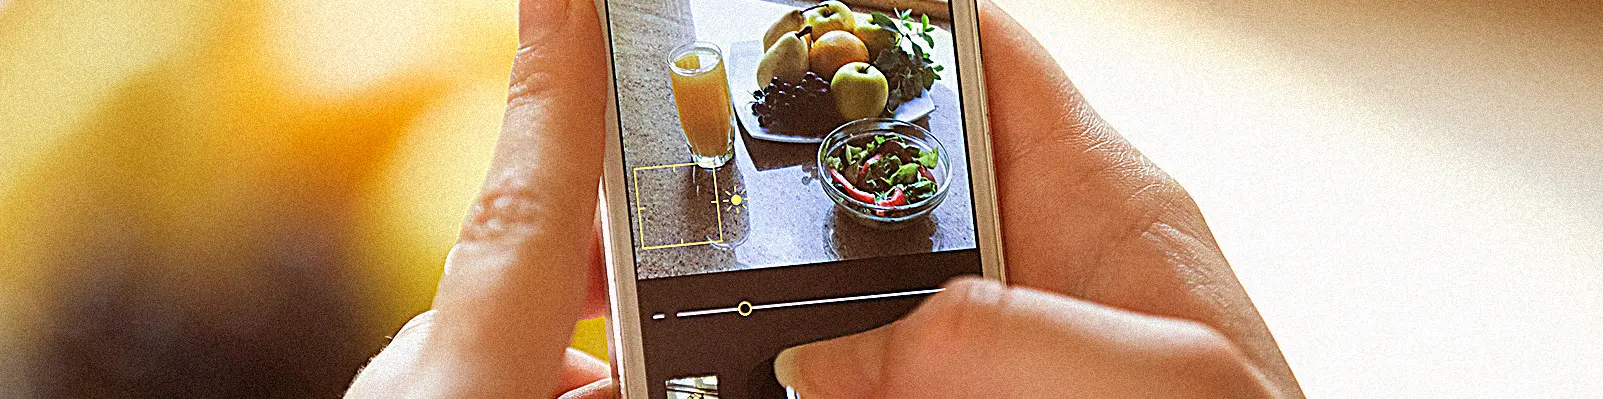 Instagram de Restaurante - 6 dicas infalíveis de marketing